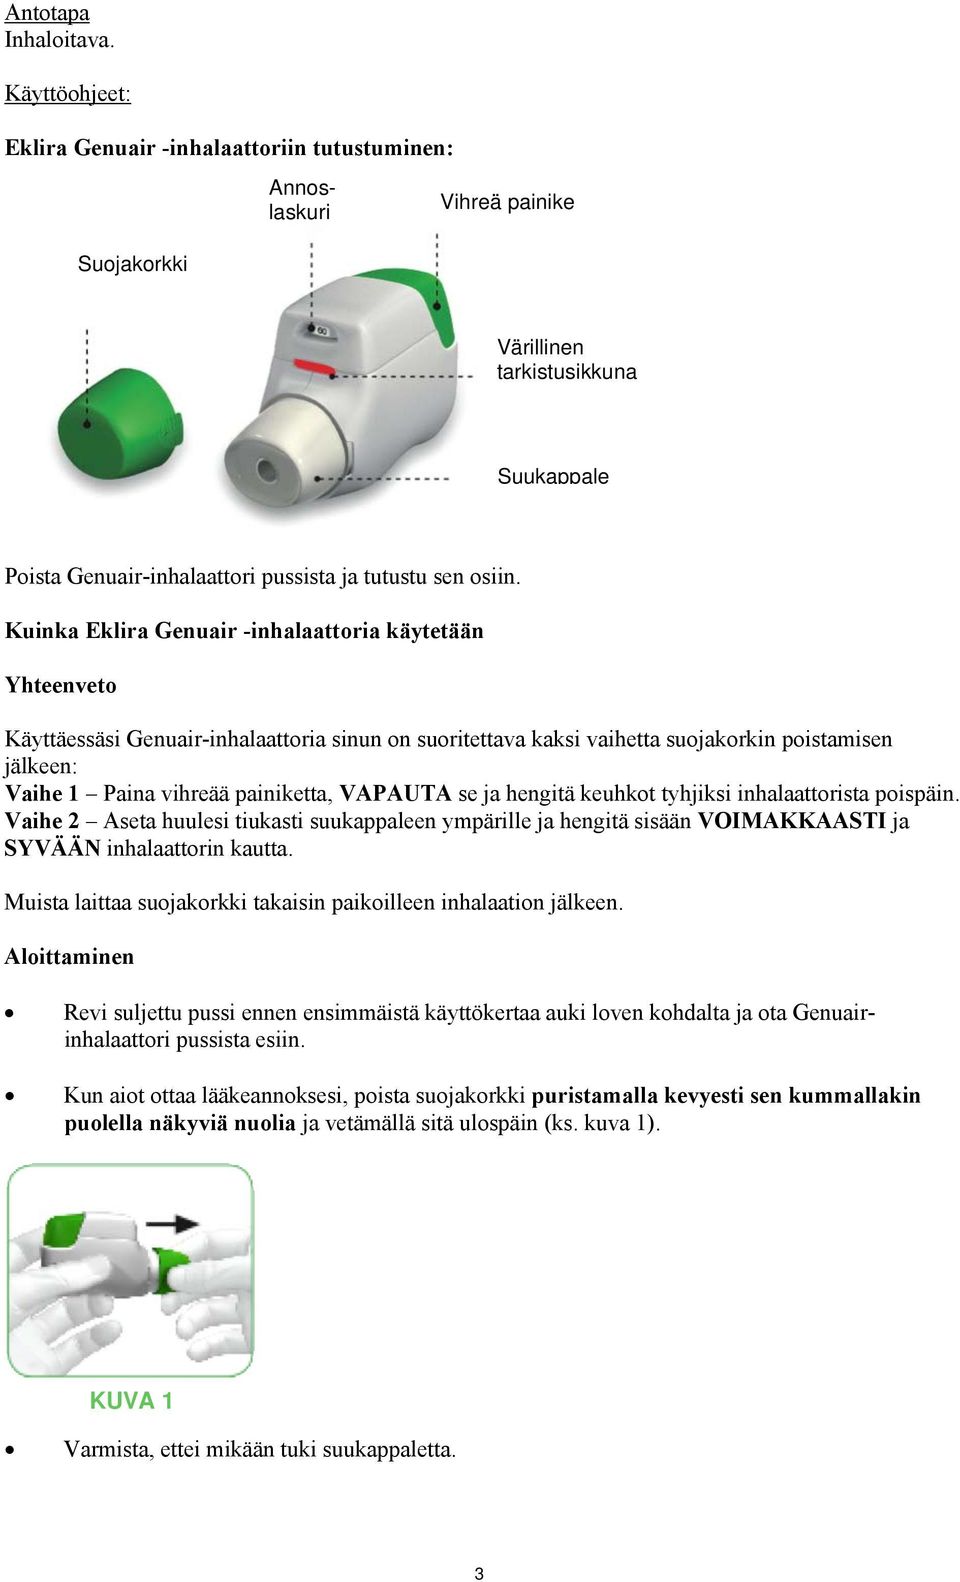 Kuinka Eklira Genuair -inhalaattoria käytetään Yhteenveto Käyttäessäsi Genuair-inhalaattoria sinun on suoritettava kaksi vaihetta suojakorkin poistamisen jälkeen: Vaihe 1 Paina vihreää painiketta,